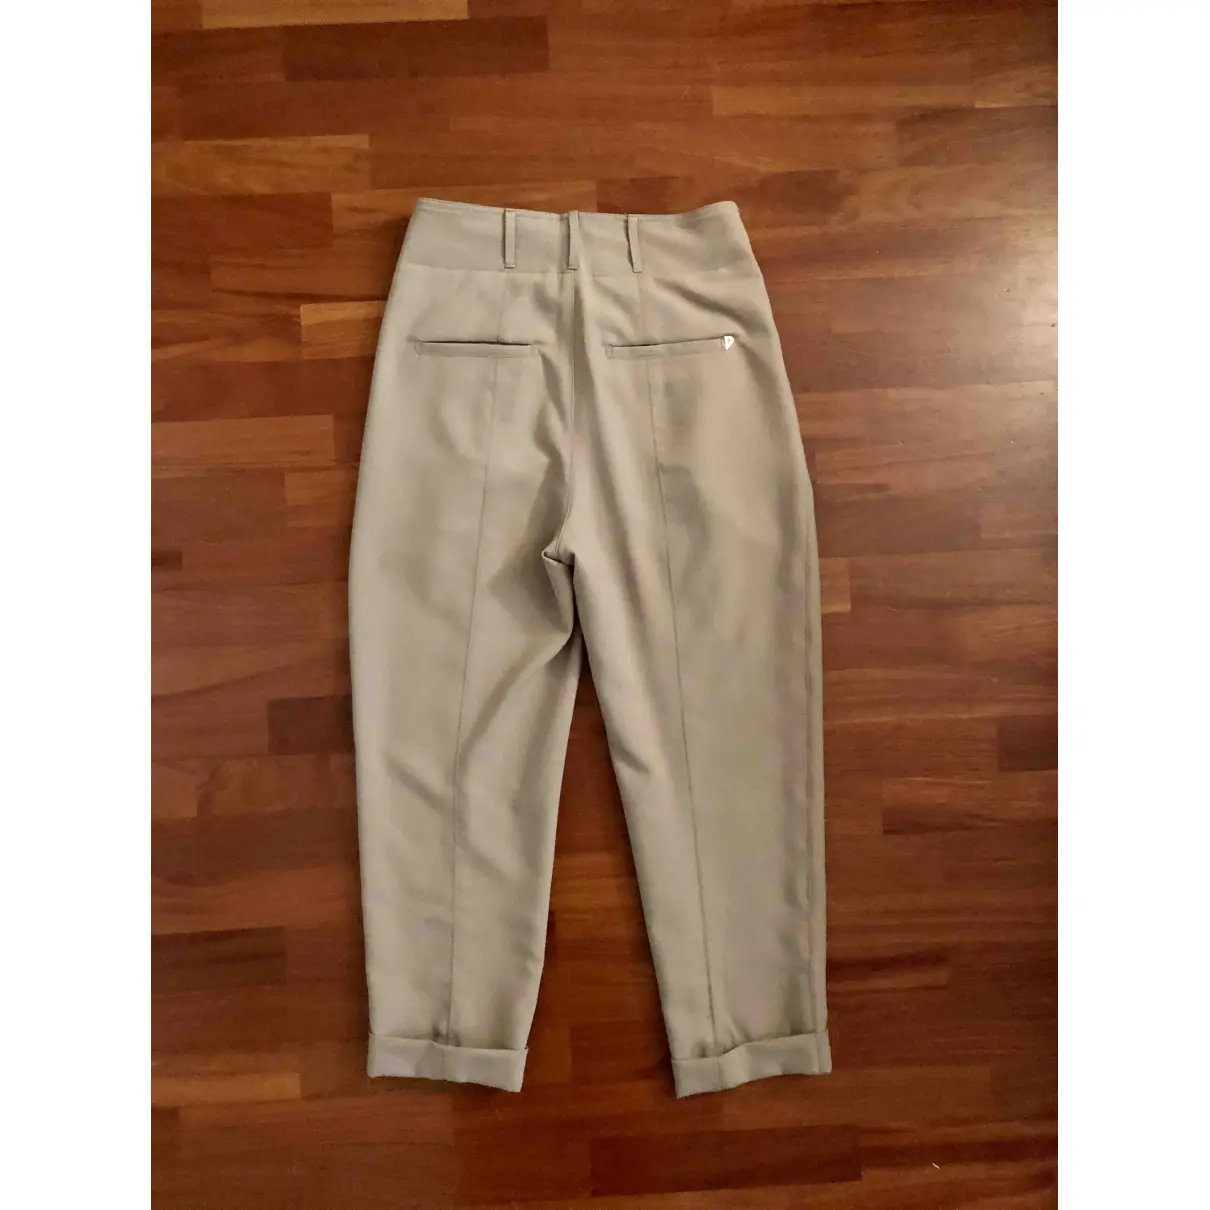 Buy Dondup Carot pants online